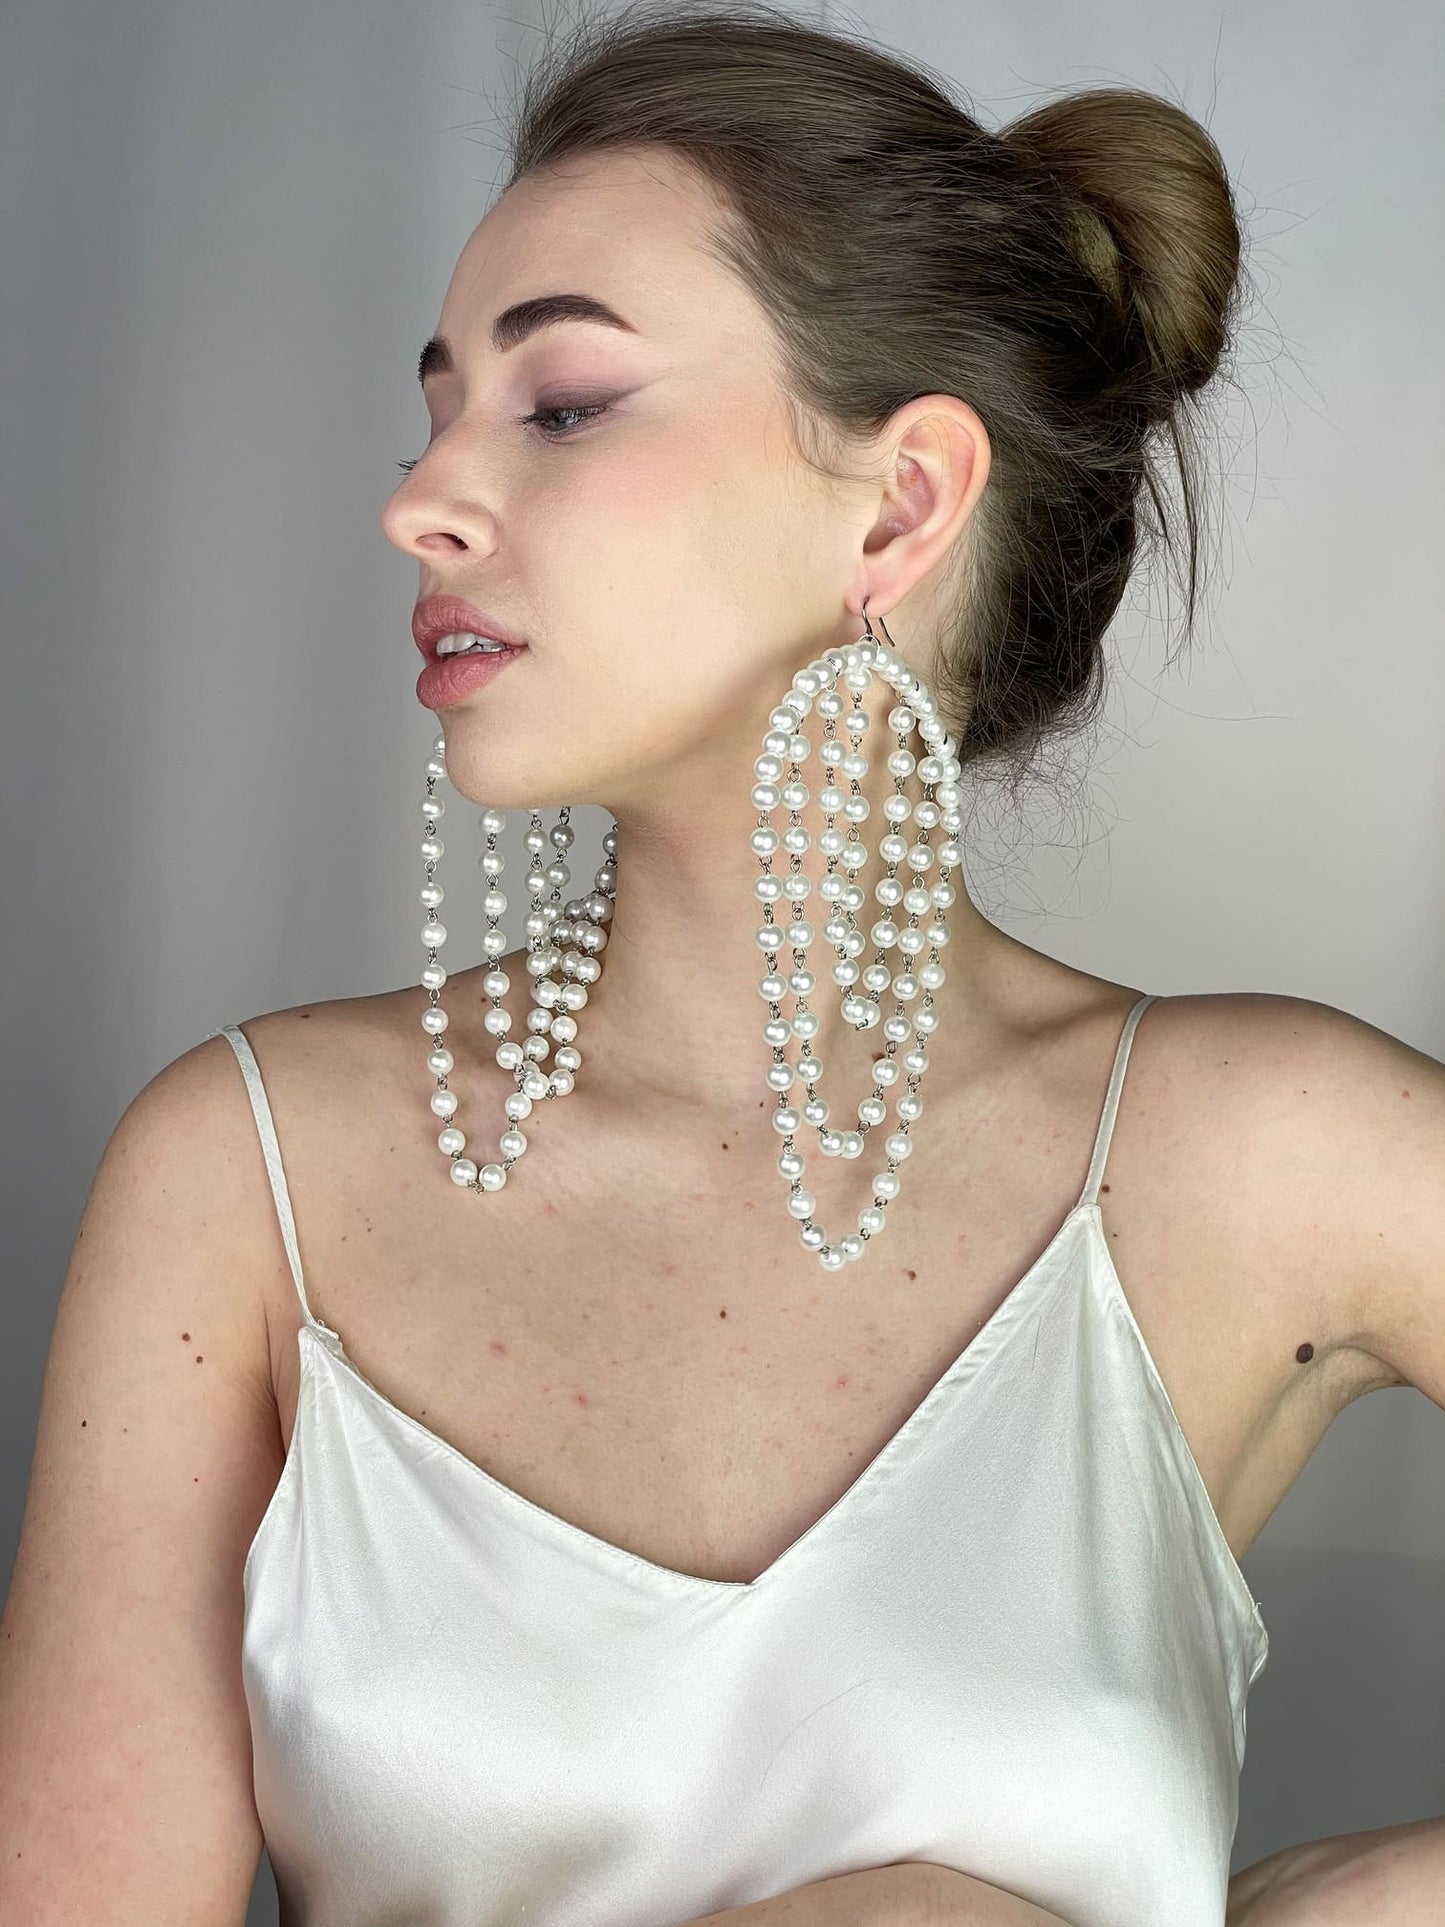 Long Pearl Dangle Earrings